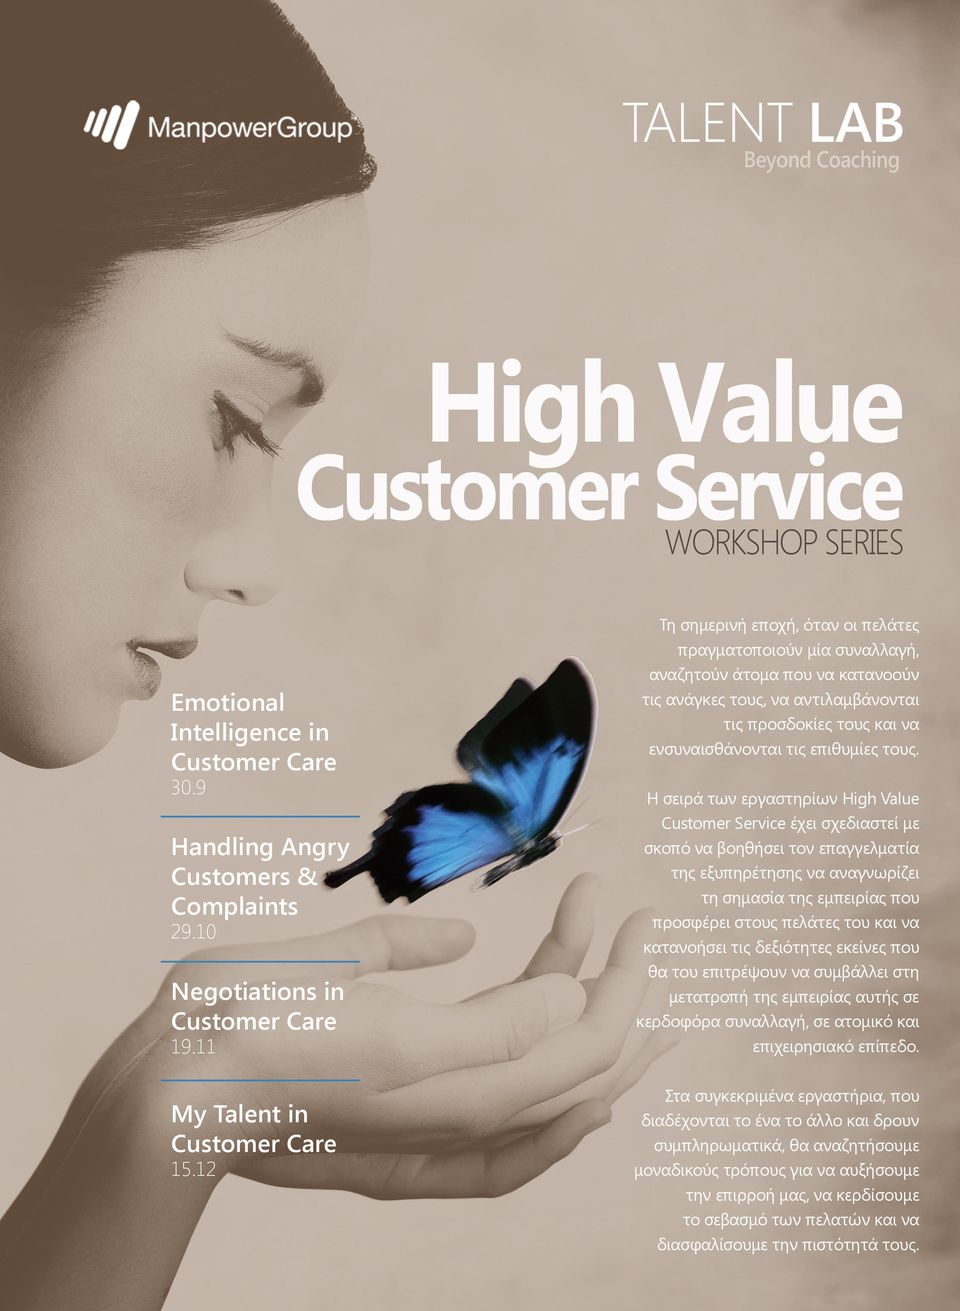 τους. Η σειρά των εργαστηρίων High Value Customer Service έχει σχεδιαστεί με σκοπό να βοηθήσει τον επαγγελματία της εξυπηρέτησης να αναγνωρίζει τη σημασία της εμπειρίας που προσφέρει στους πελάτες